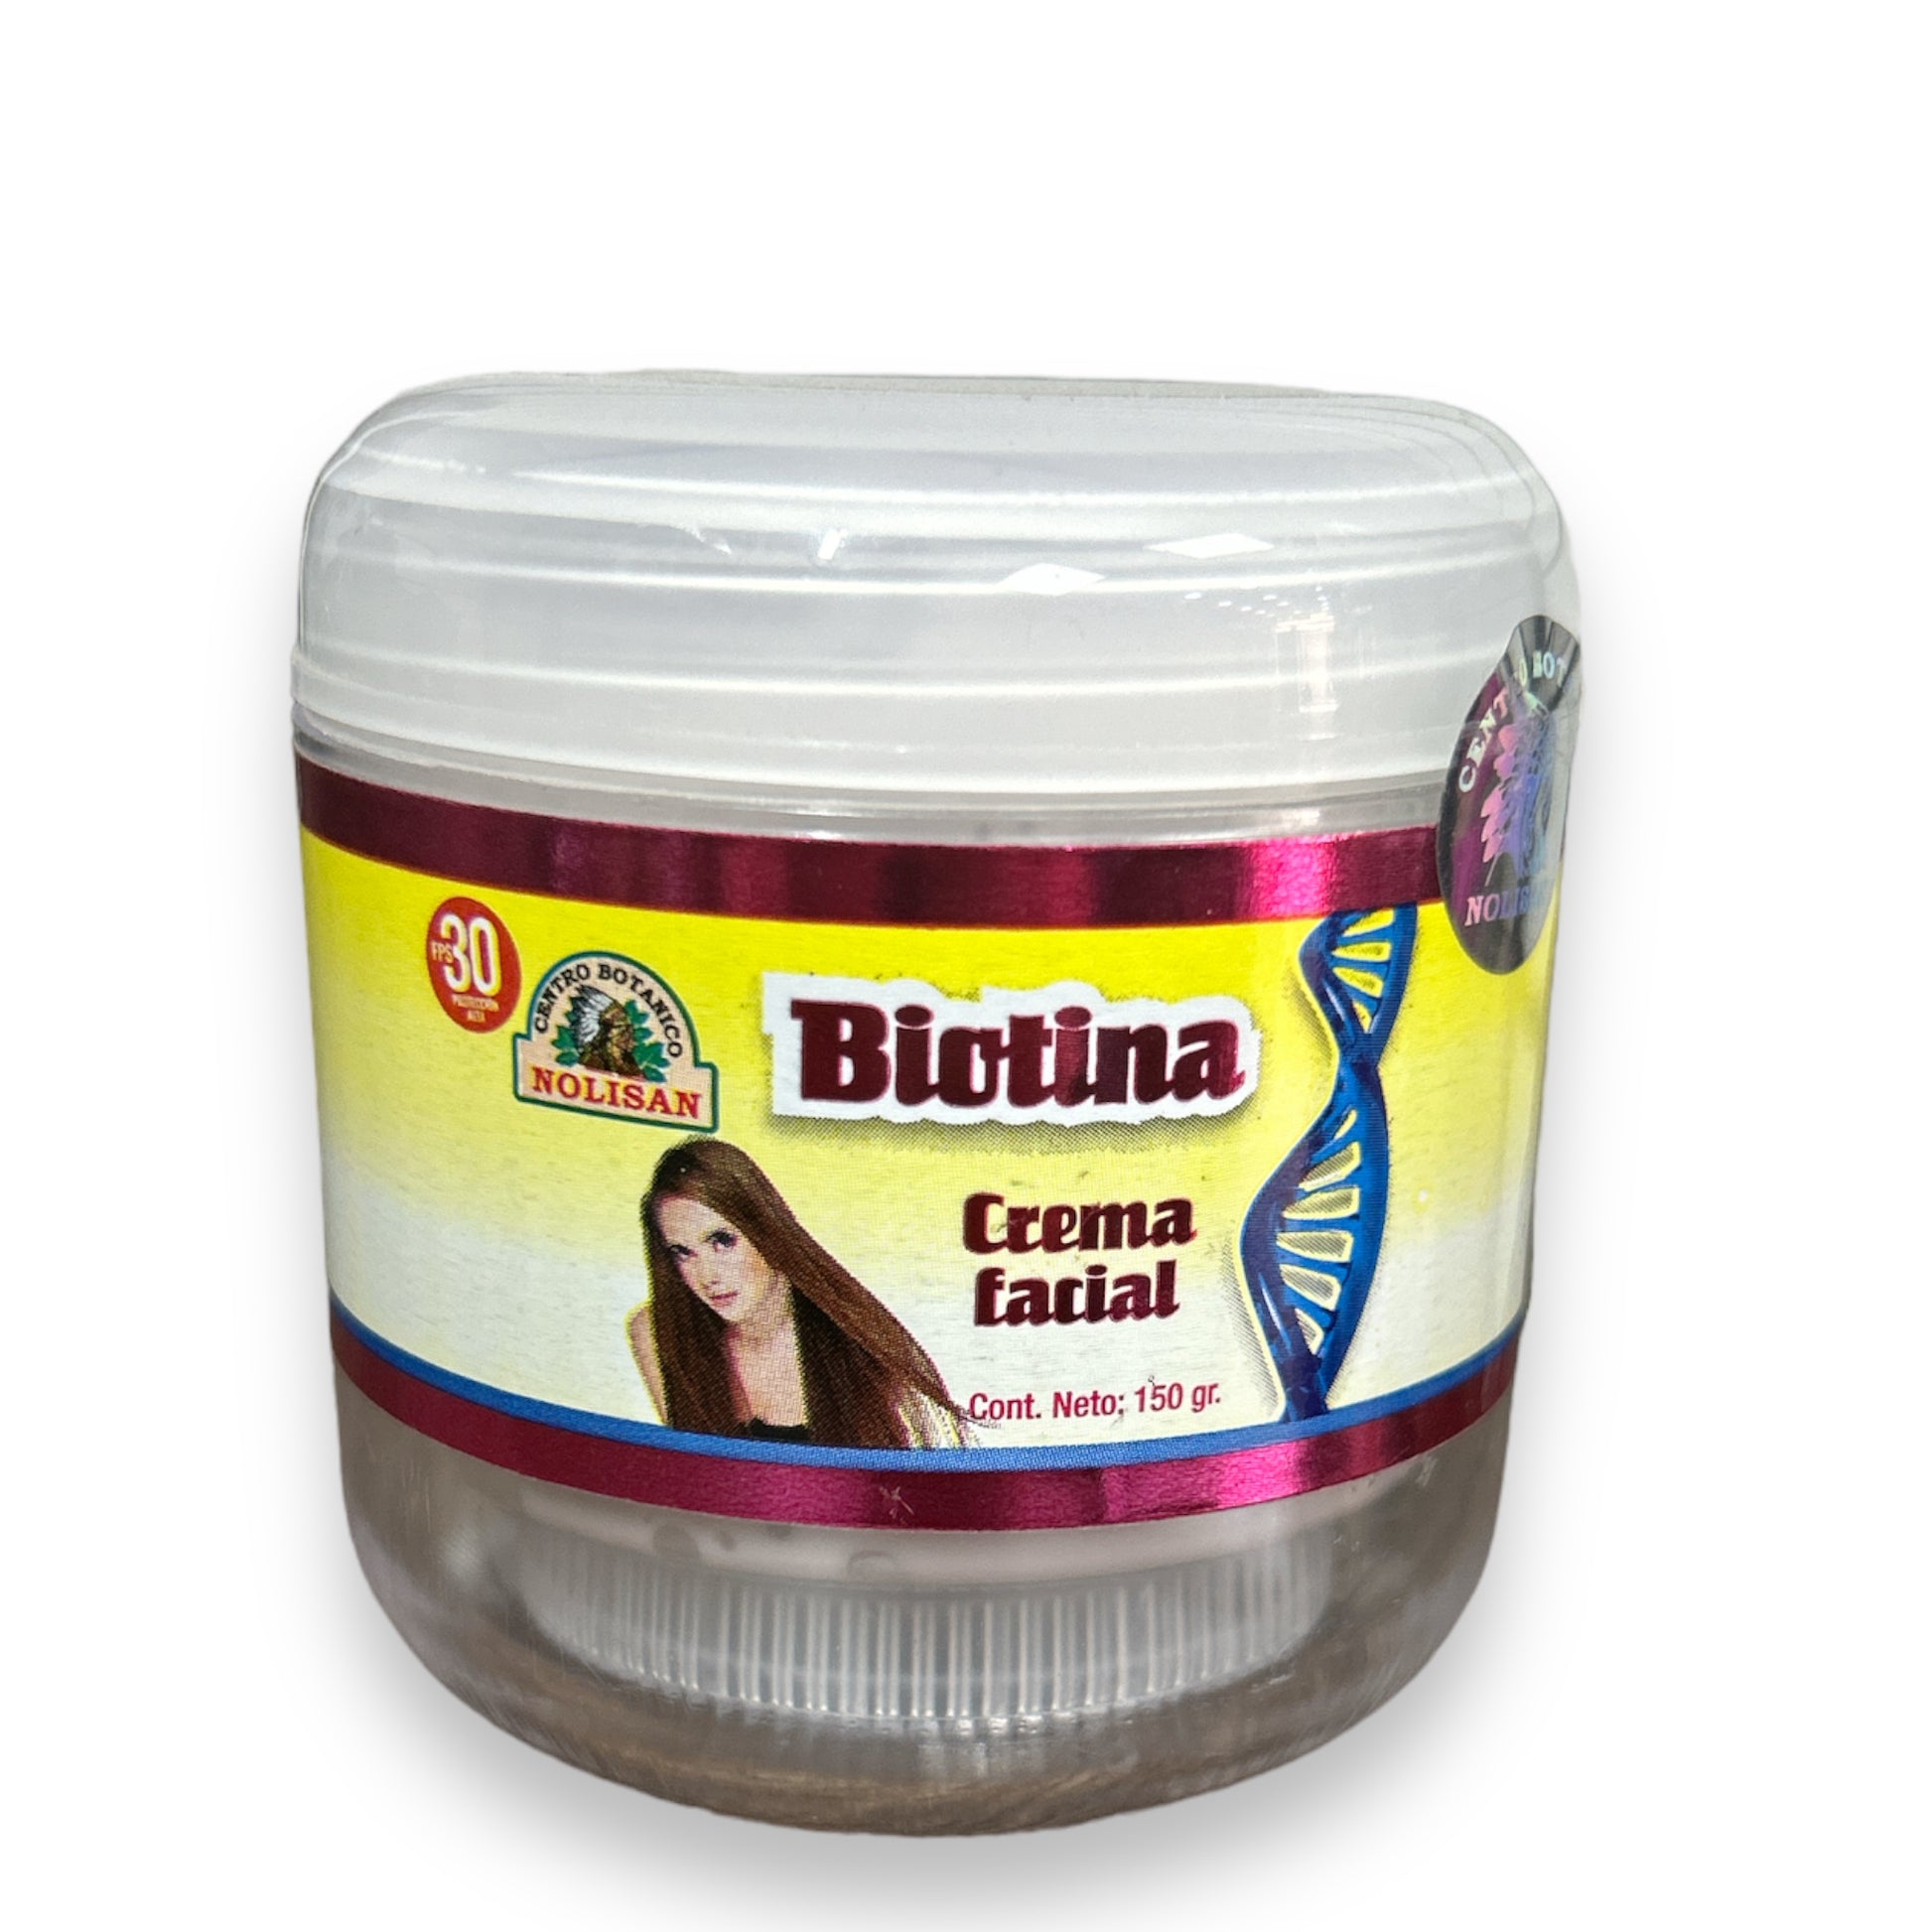 Crema Facial de Biotina 150 g Nolisan